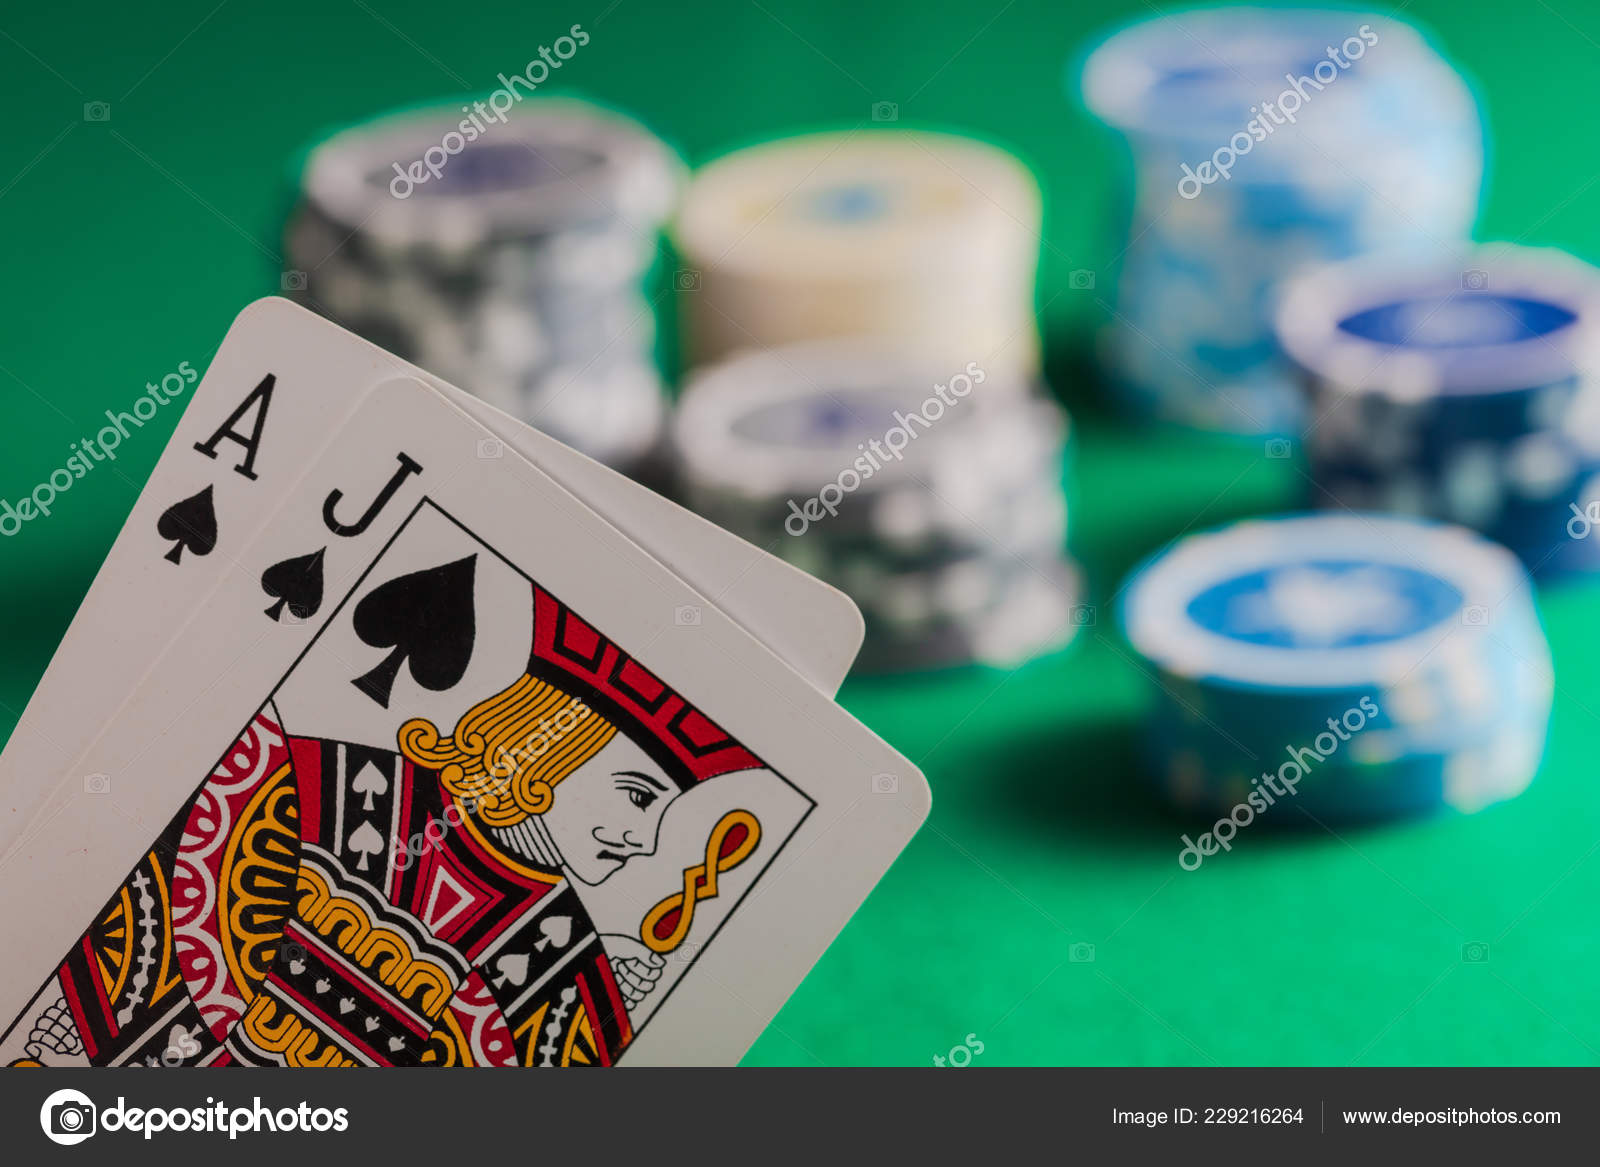 Casino Gambling Concept Blackjack Poker Chips Felt Blur Background Stock Photo ©gioiak2 229216264